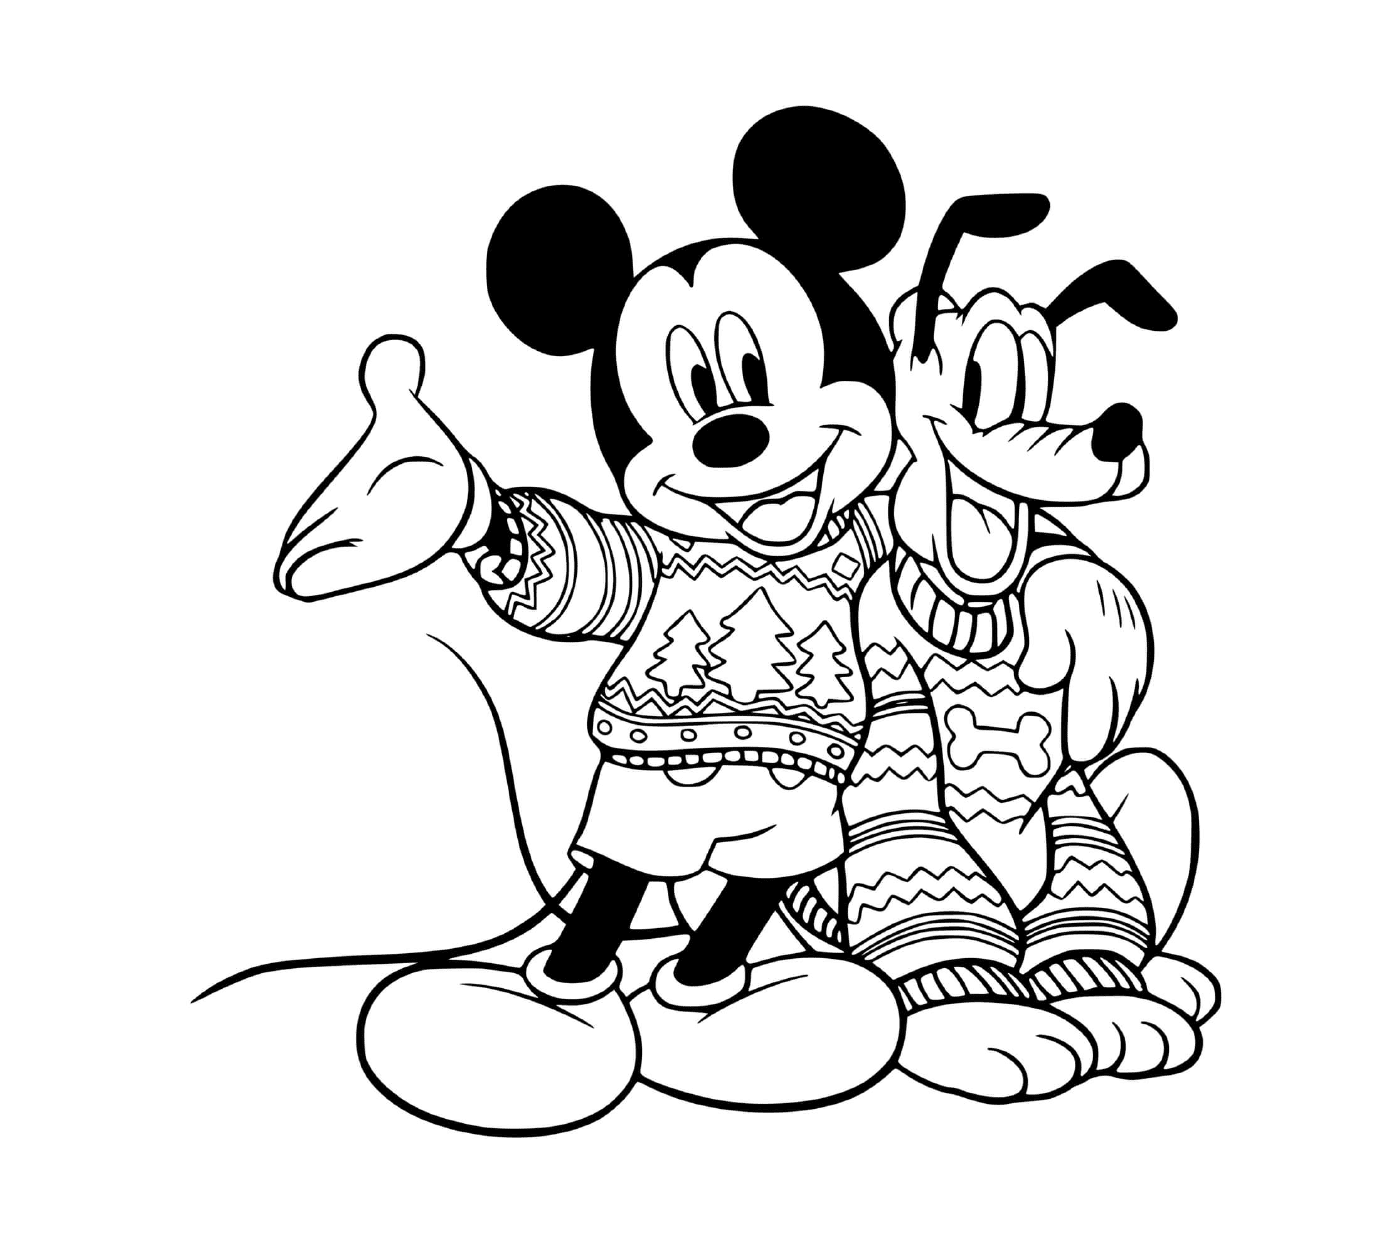  Mickey und Pluto in Pullovern 